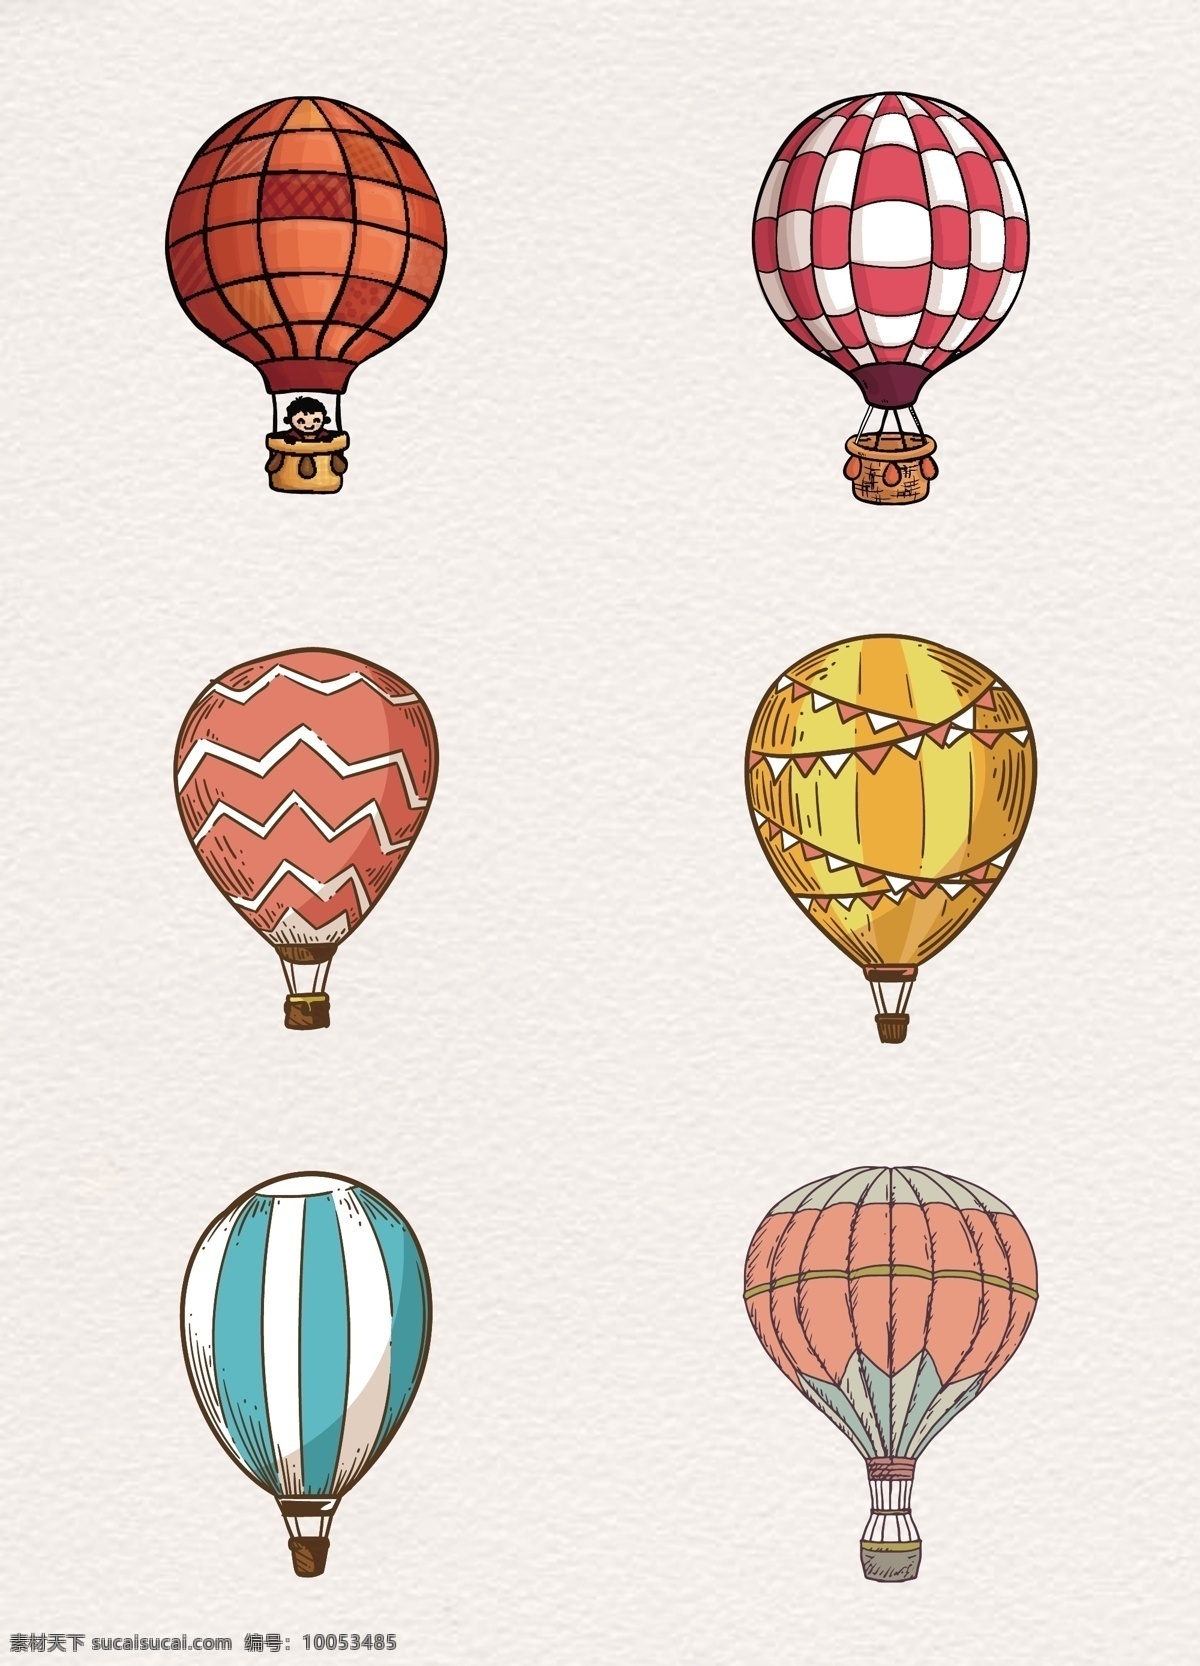 彩色 花纹 旅行 暖色系列 矢量图 条格状 装饰图 卡通 插图 创意卡通 飞行 卡通气球 浅色 热气球矢量 形状 圆弧 运动 生活百科 休闲娱乐